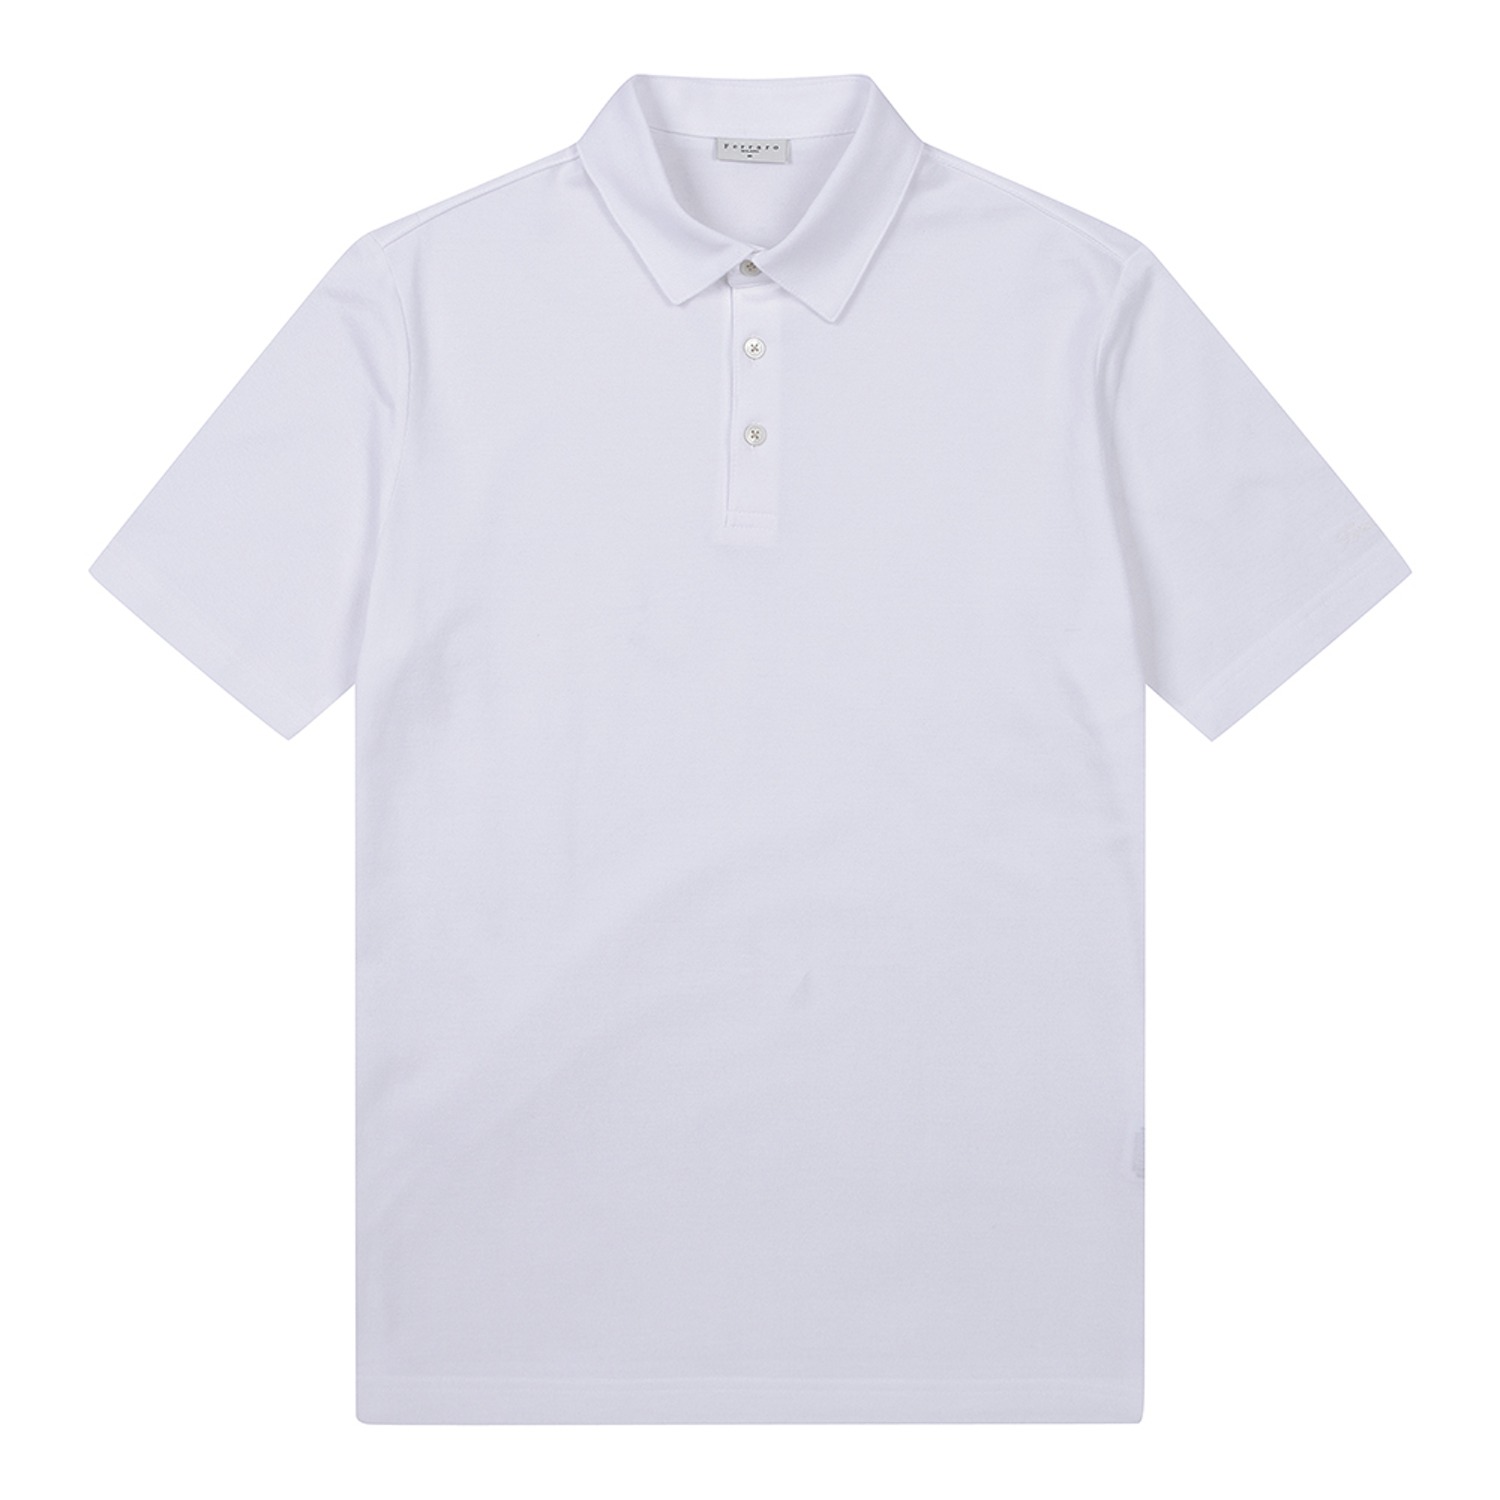 남성 베이직 피케 조직 카라 반팔 티셔츠 화이트 (AEC120131)